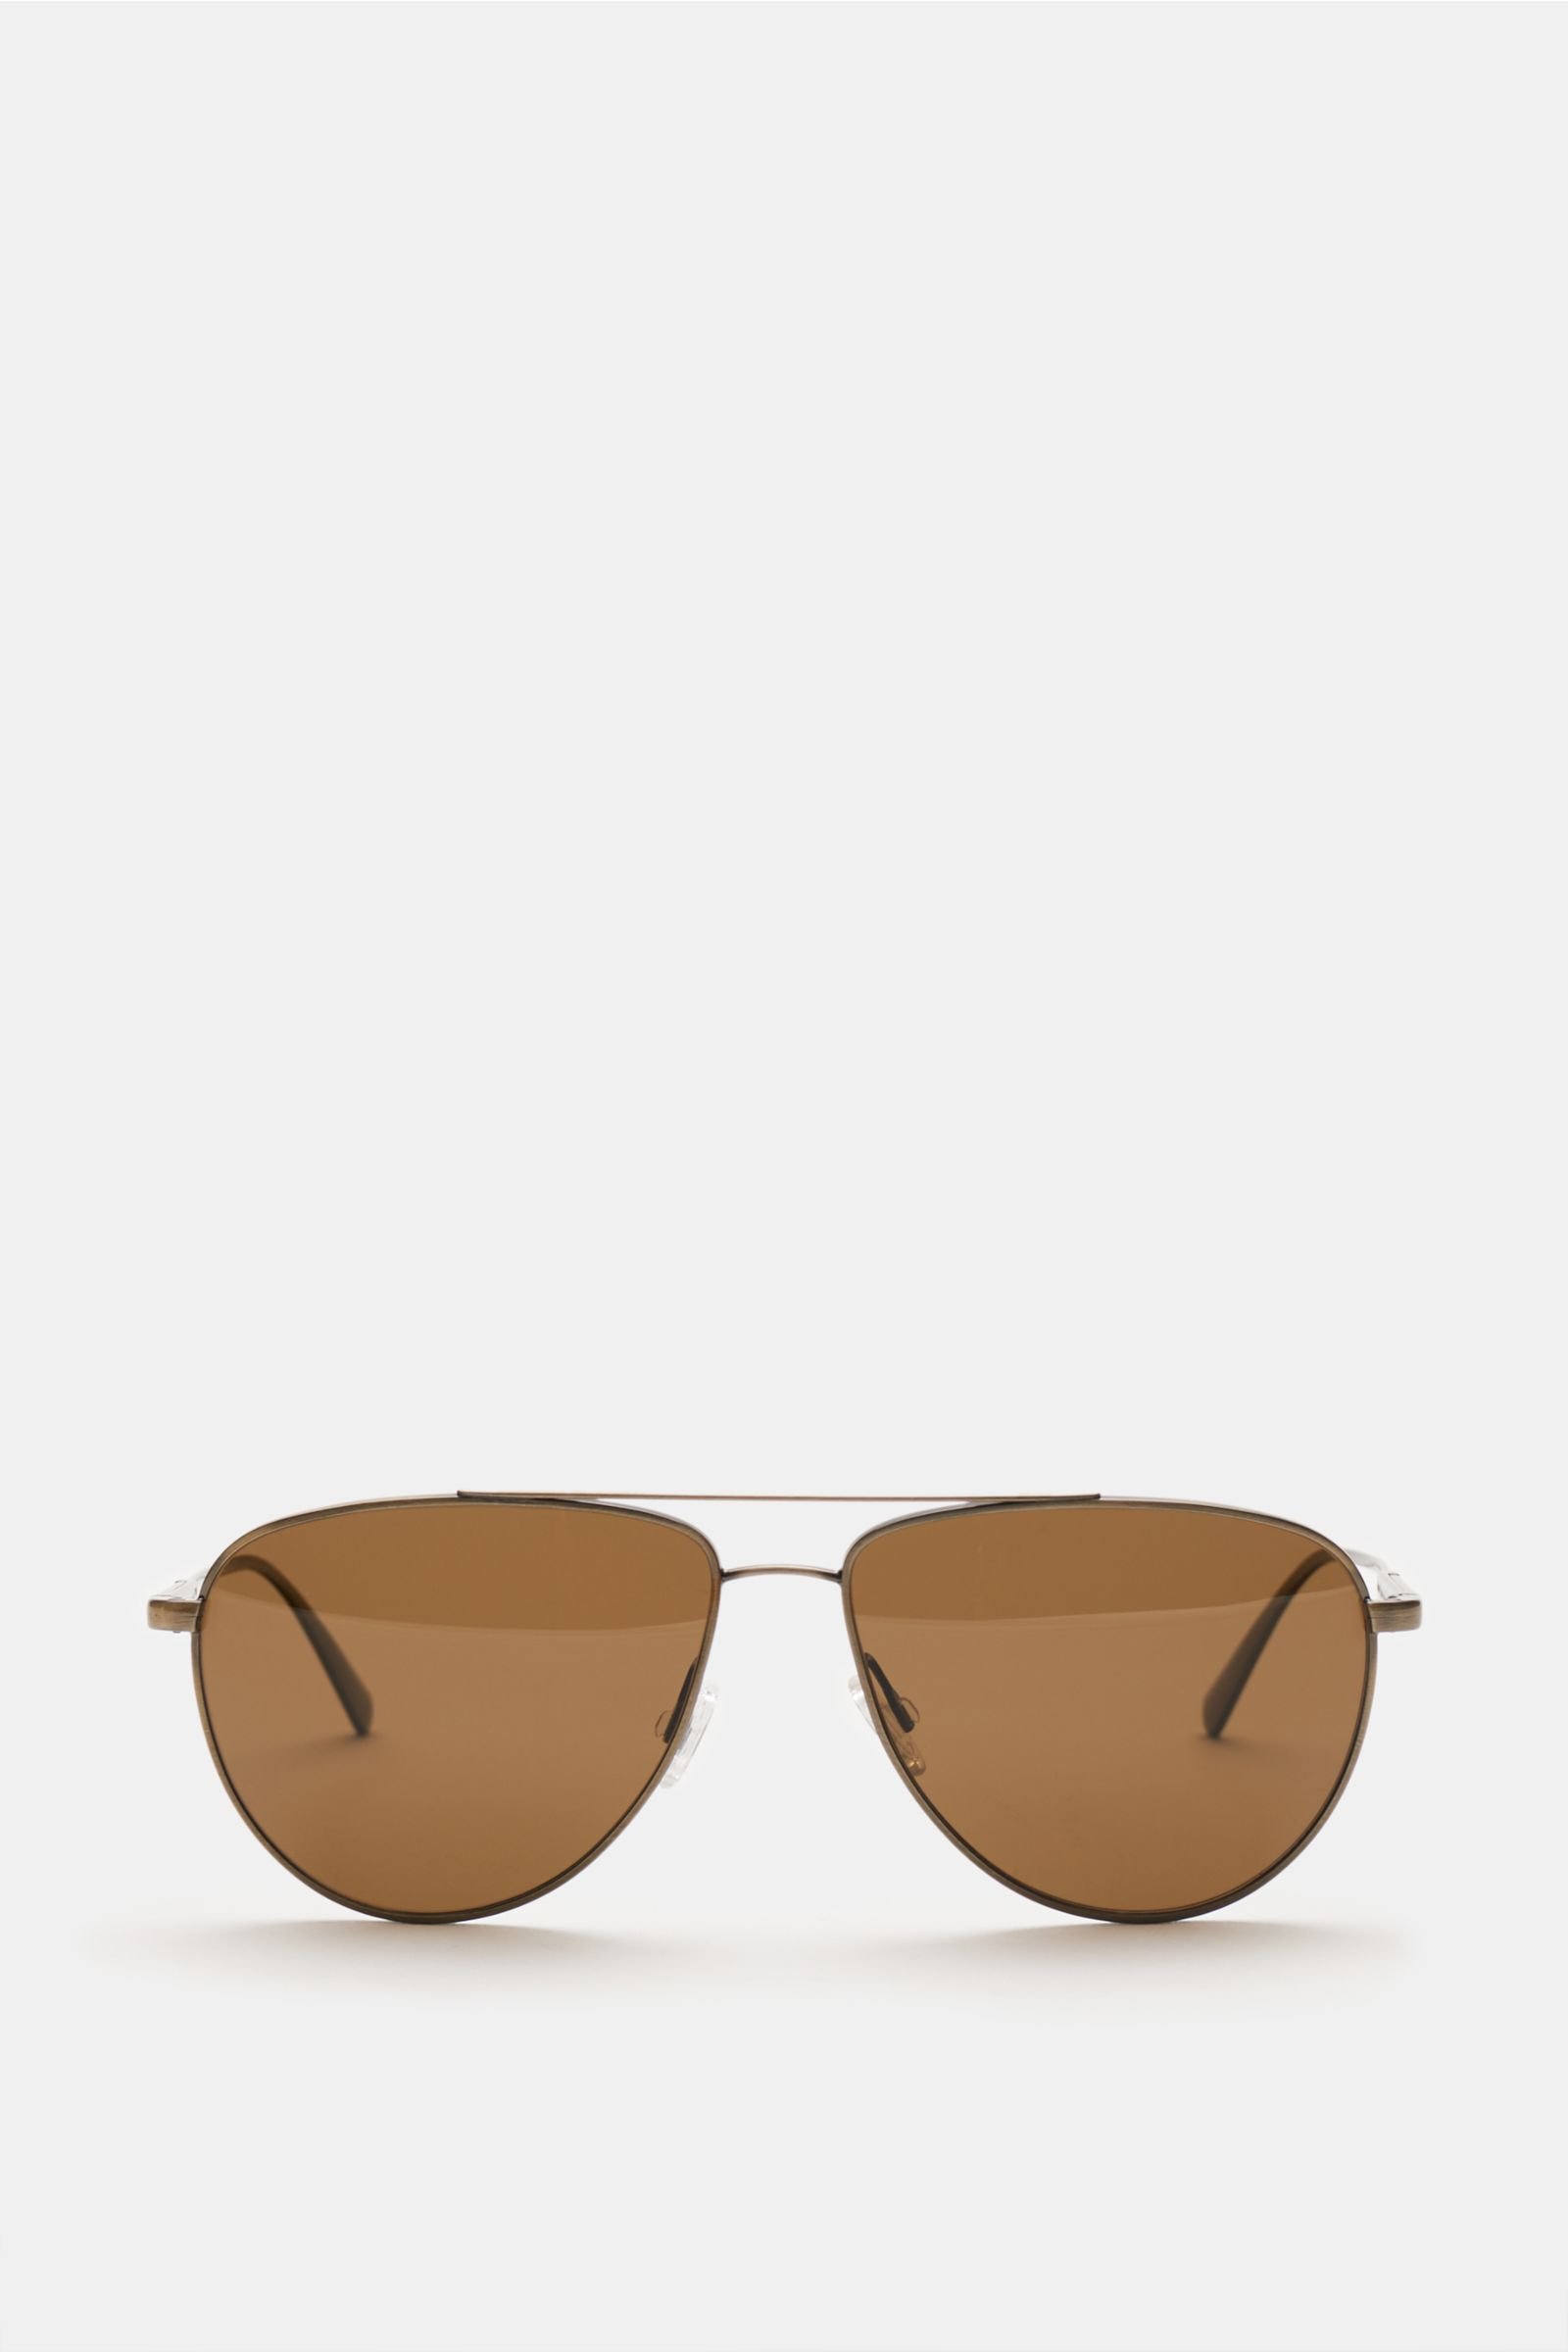 Sunglasses 'Disoriano' antique gold/brown 